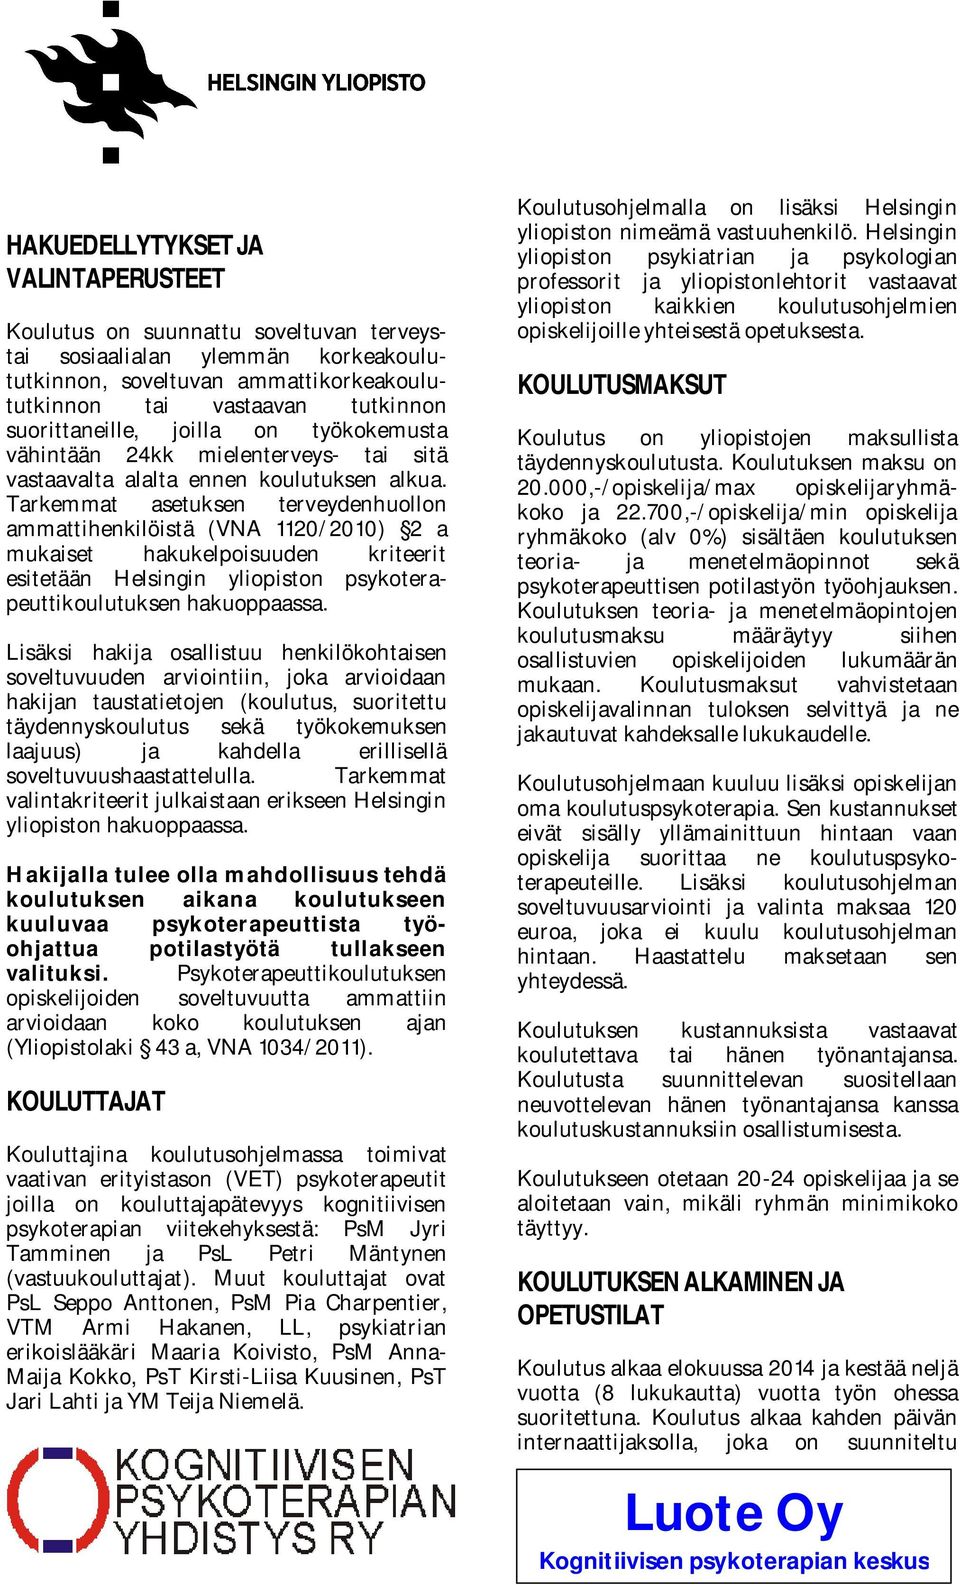 Tarkemmat asetuksen terveydenhuollon ammattihenkilöistä (VNA 1120/2010) 2 a mukaiset hakukelpoisuuden kriteerit esitetään Helsingin yliopiston psykoterapeuttikoulutuksen hakuoppaassa.